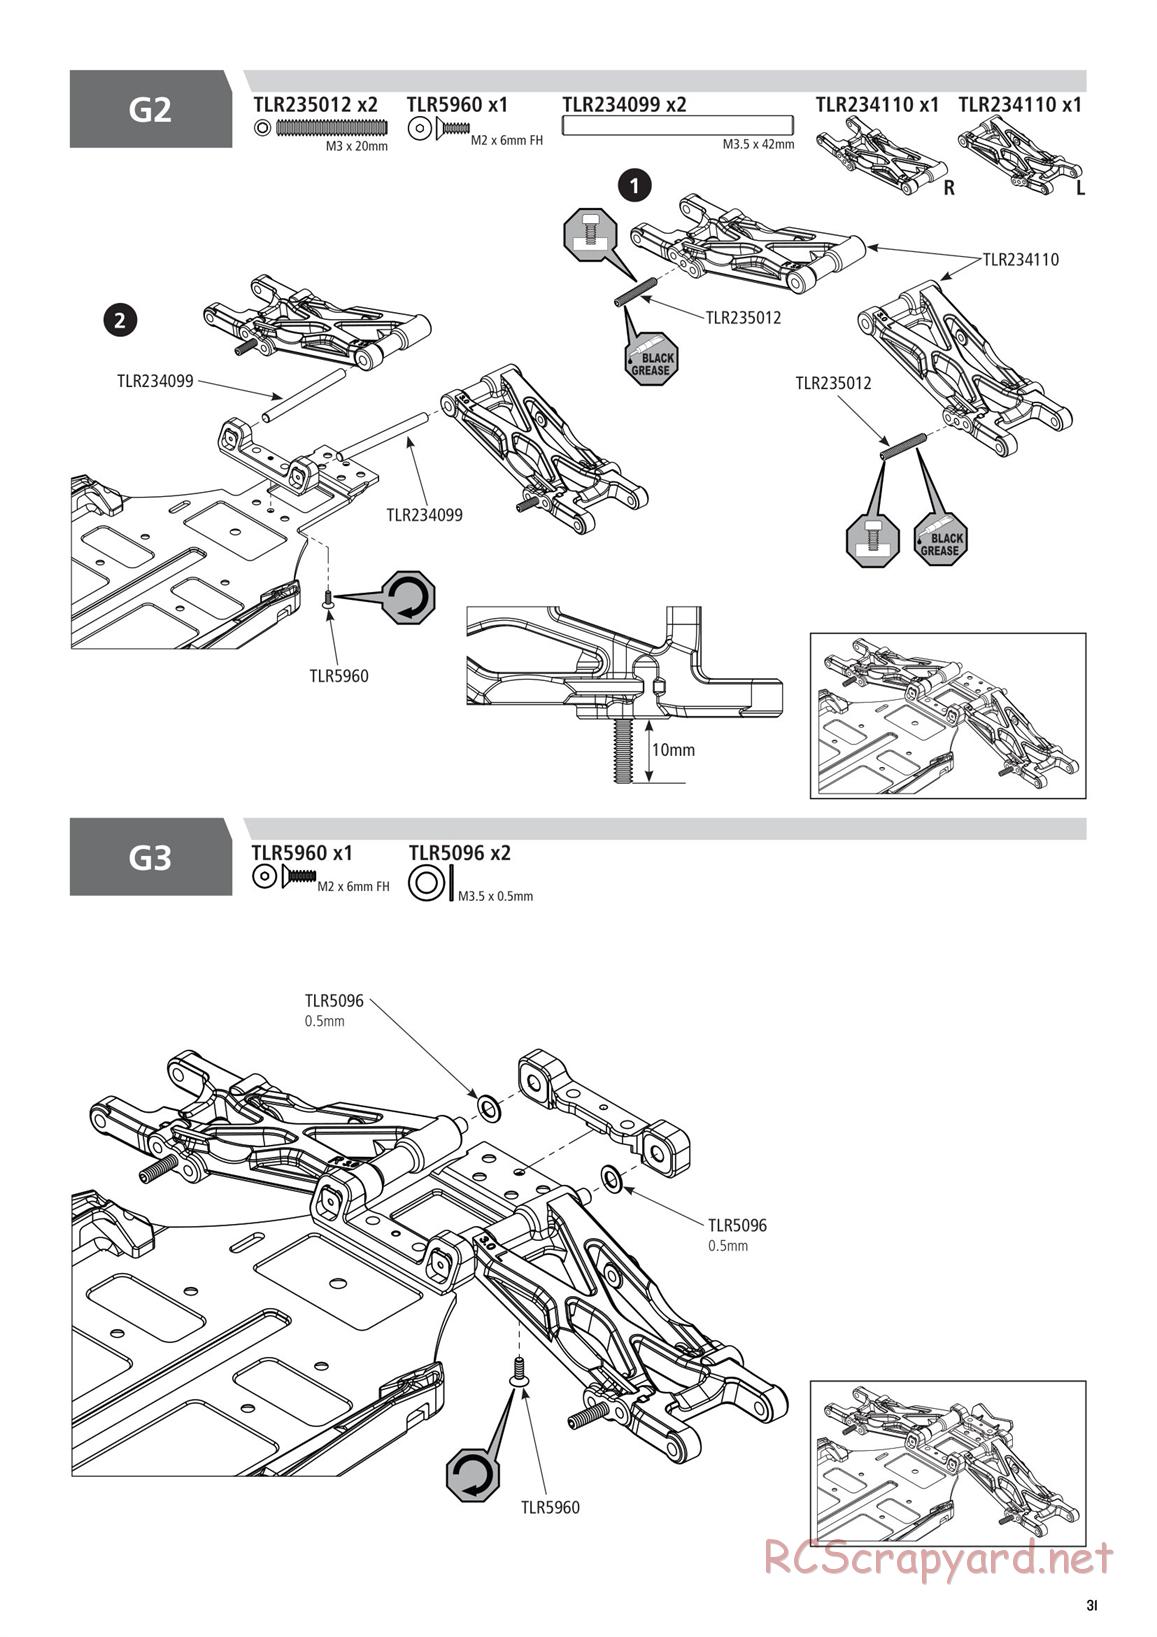 Team Losi - TLR 22 5.0 DC Elite Race - Manual - Page 31